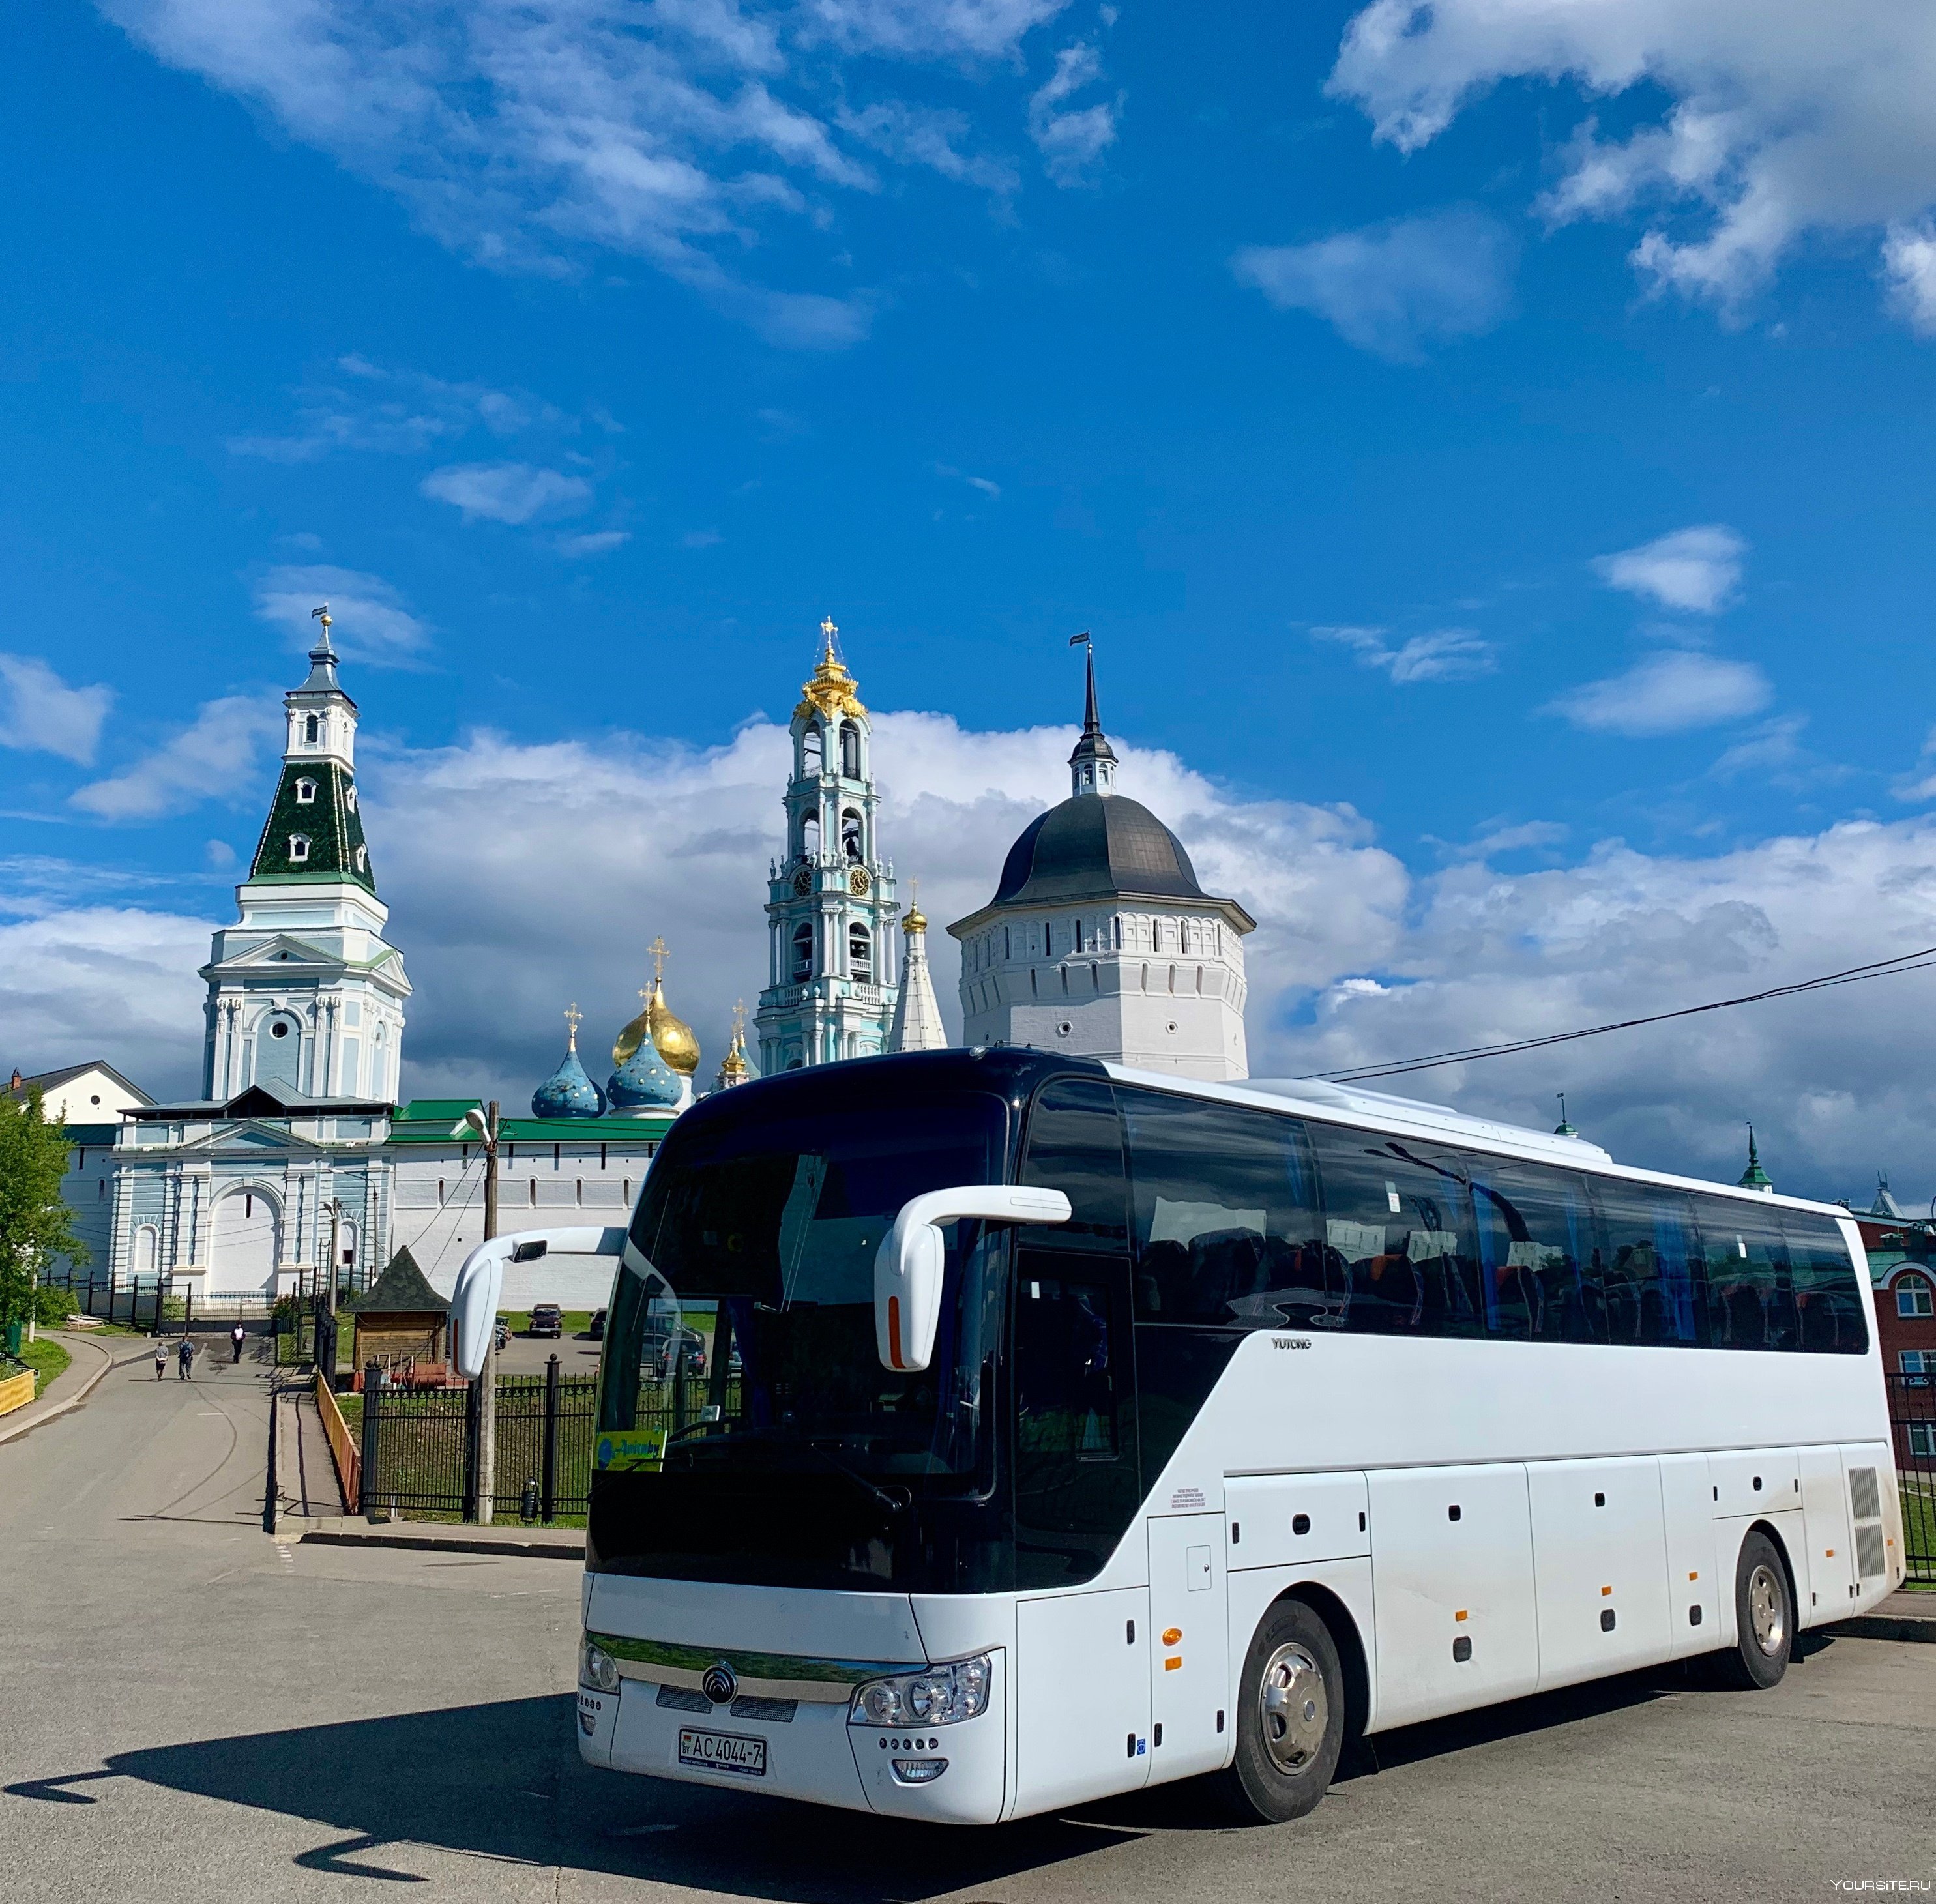 Класс тур москва. Свияжск остров-град 2022. Автобусный тур. Экскурсионный. Туристический автобус.